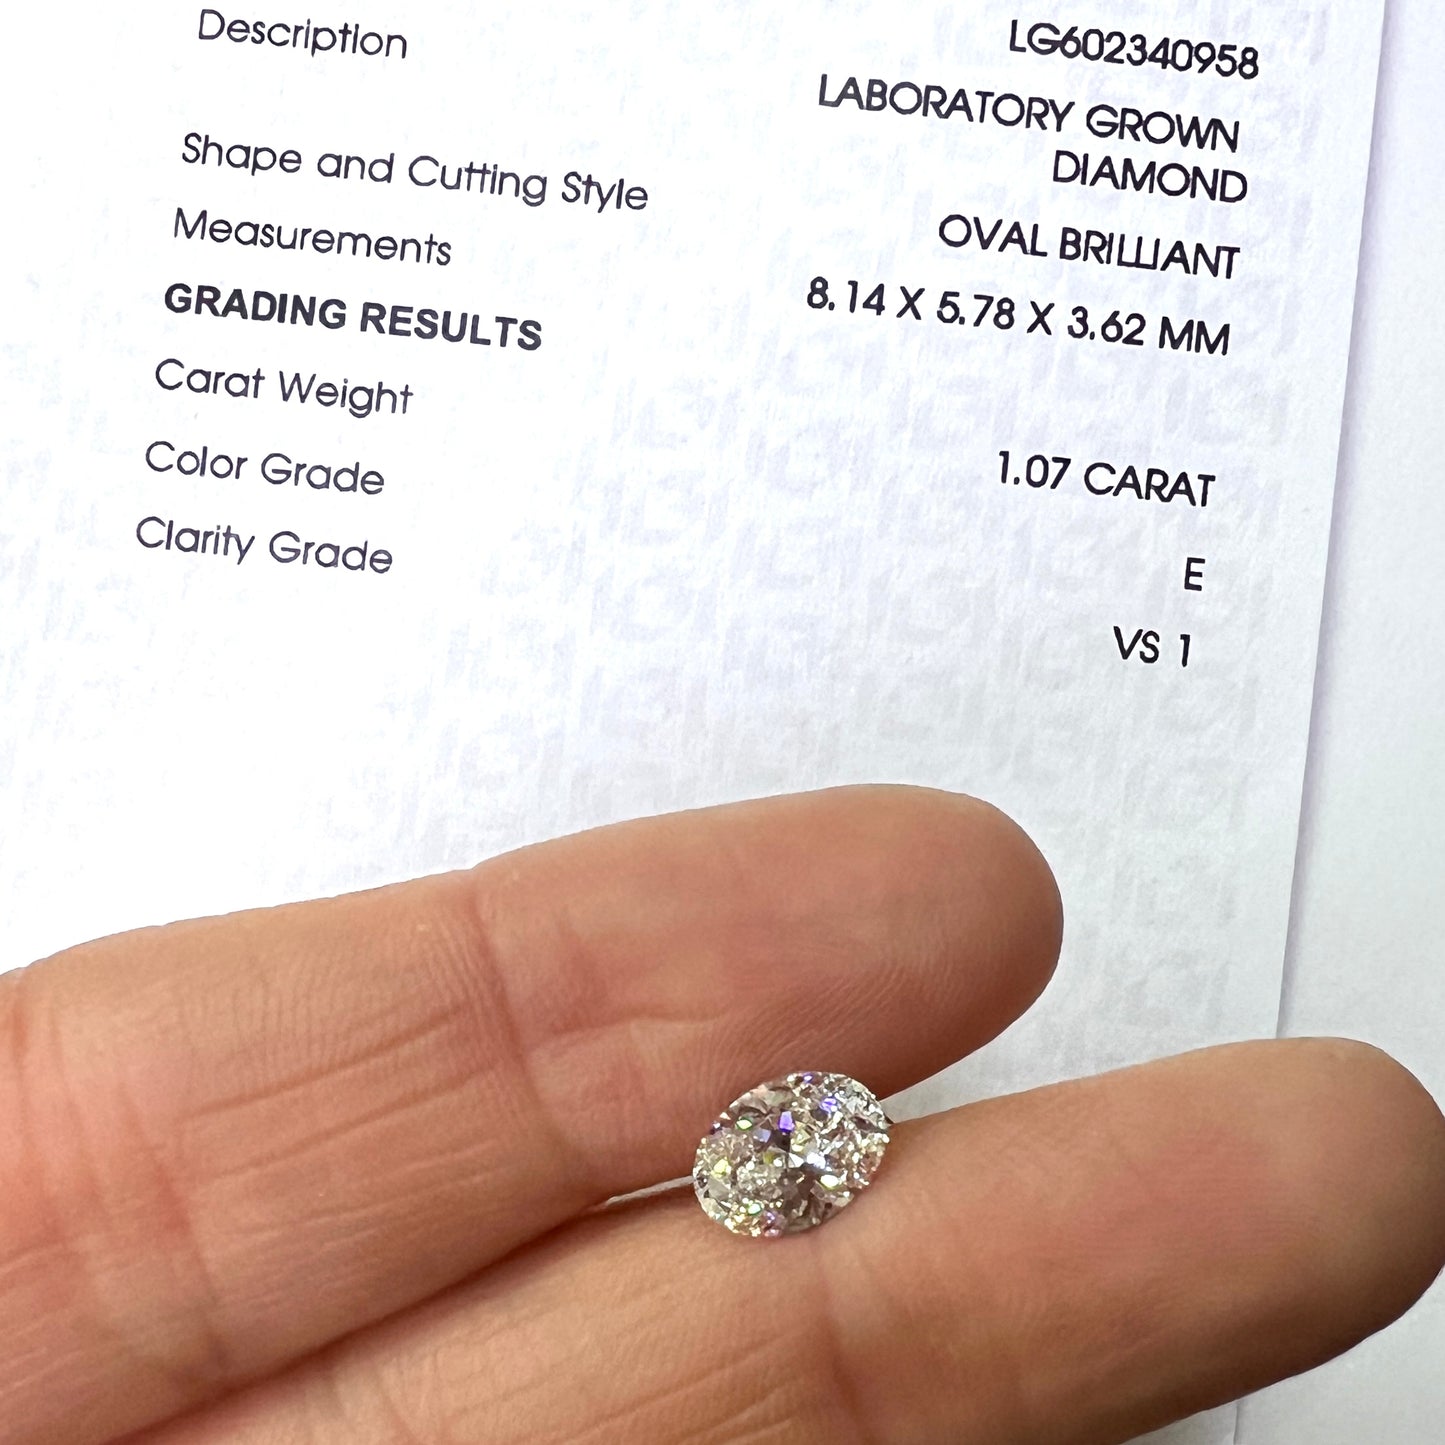 Diamante de Laboratorio 1.07qts Oval